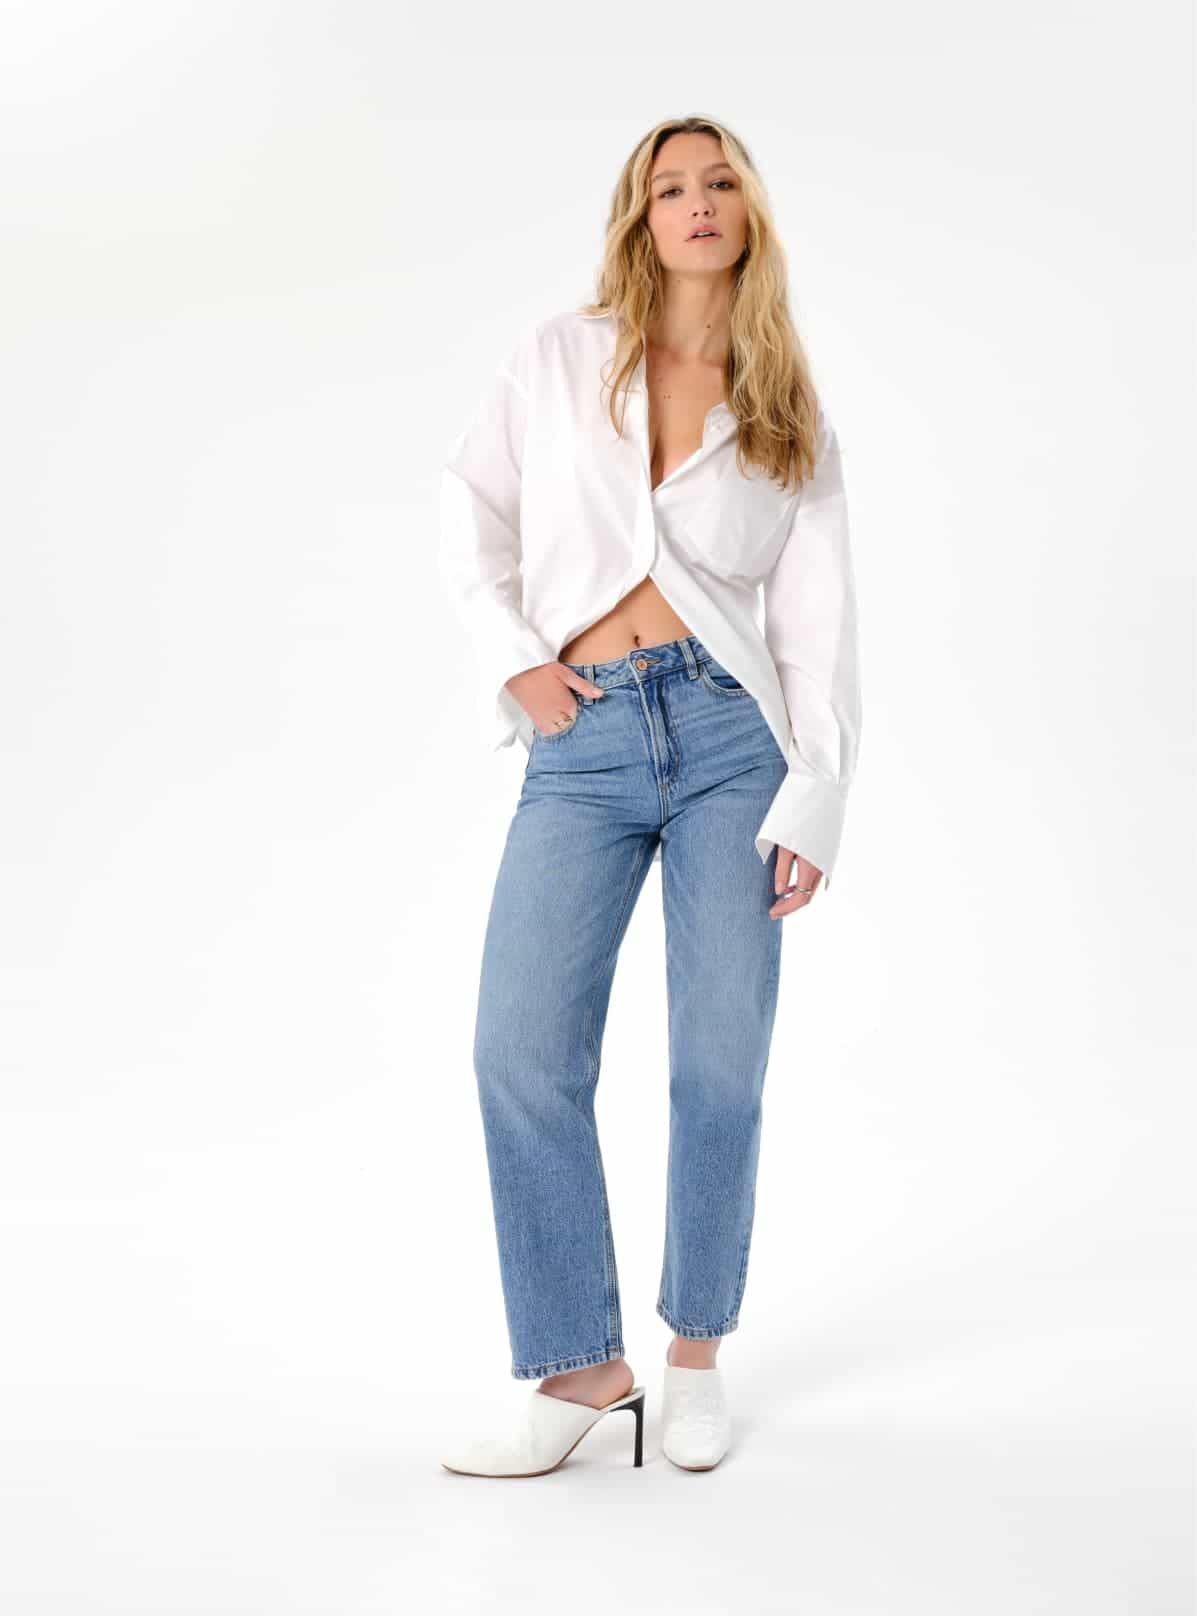 Une mannequin porte un jean bleu à jambe droite avec une chemise boutonnée blanche.